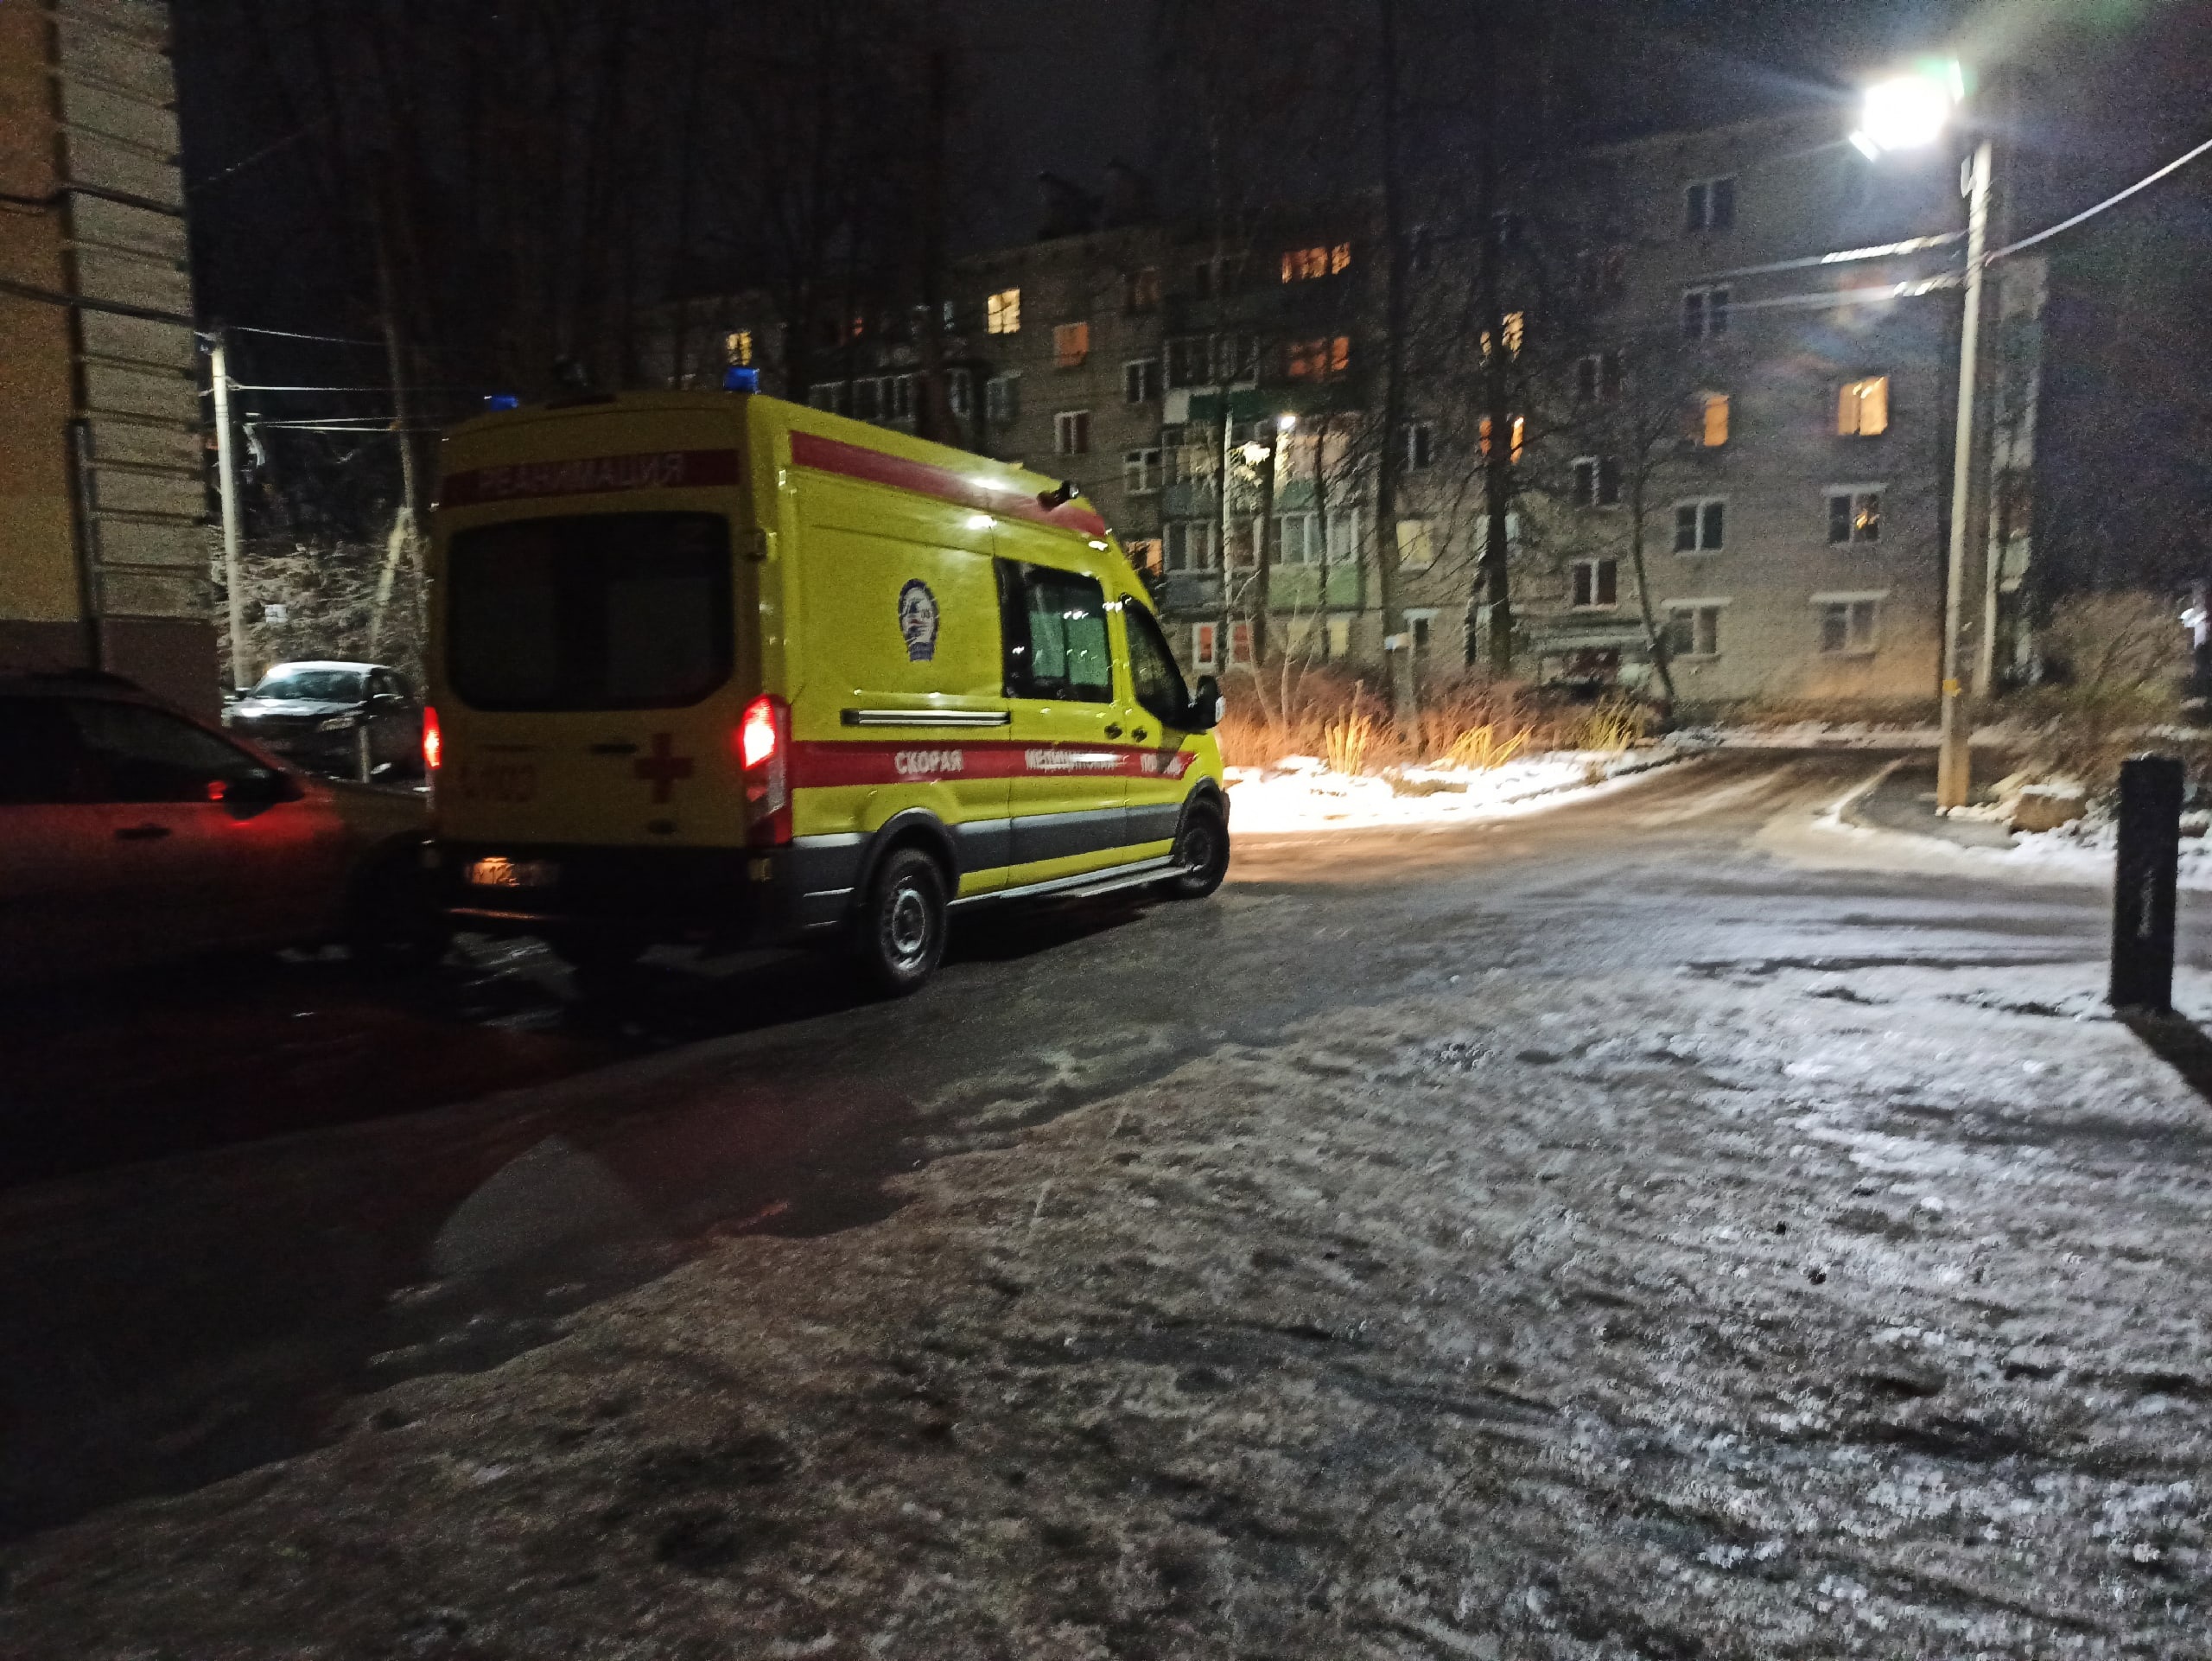  Шесть взрослых и дети-близнецы пострадали в ДТП в Ярославской области